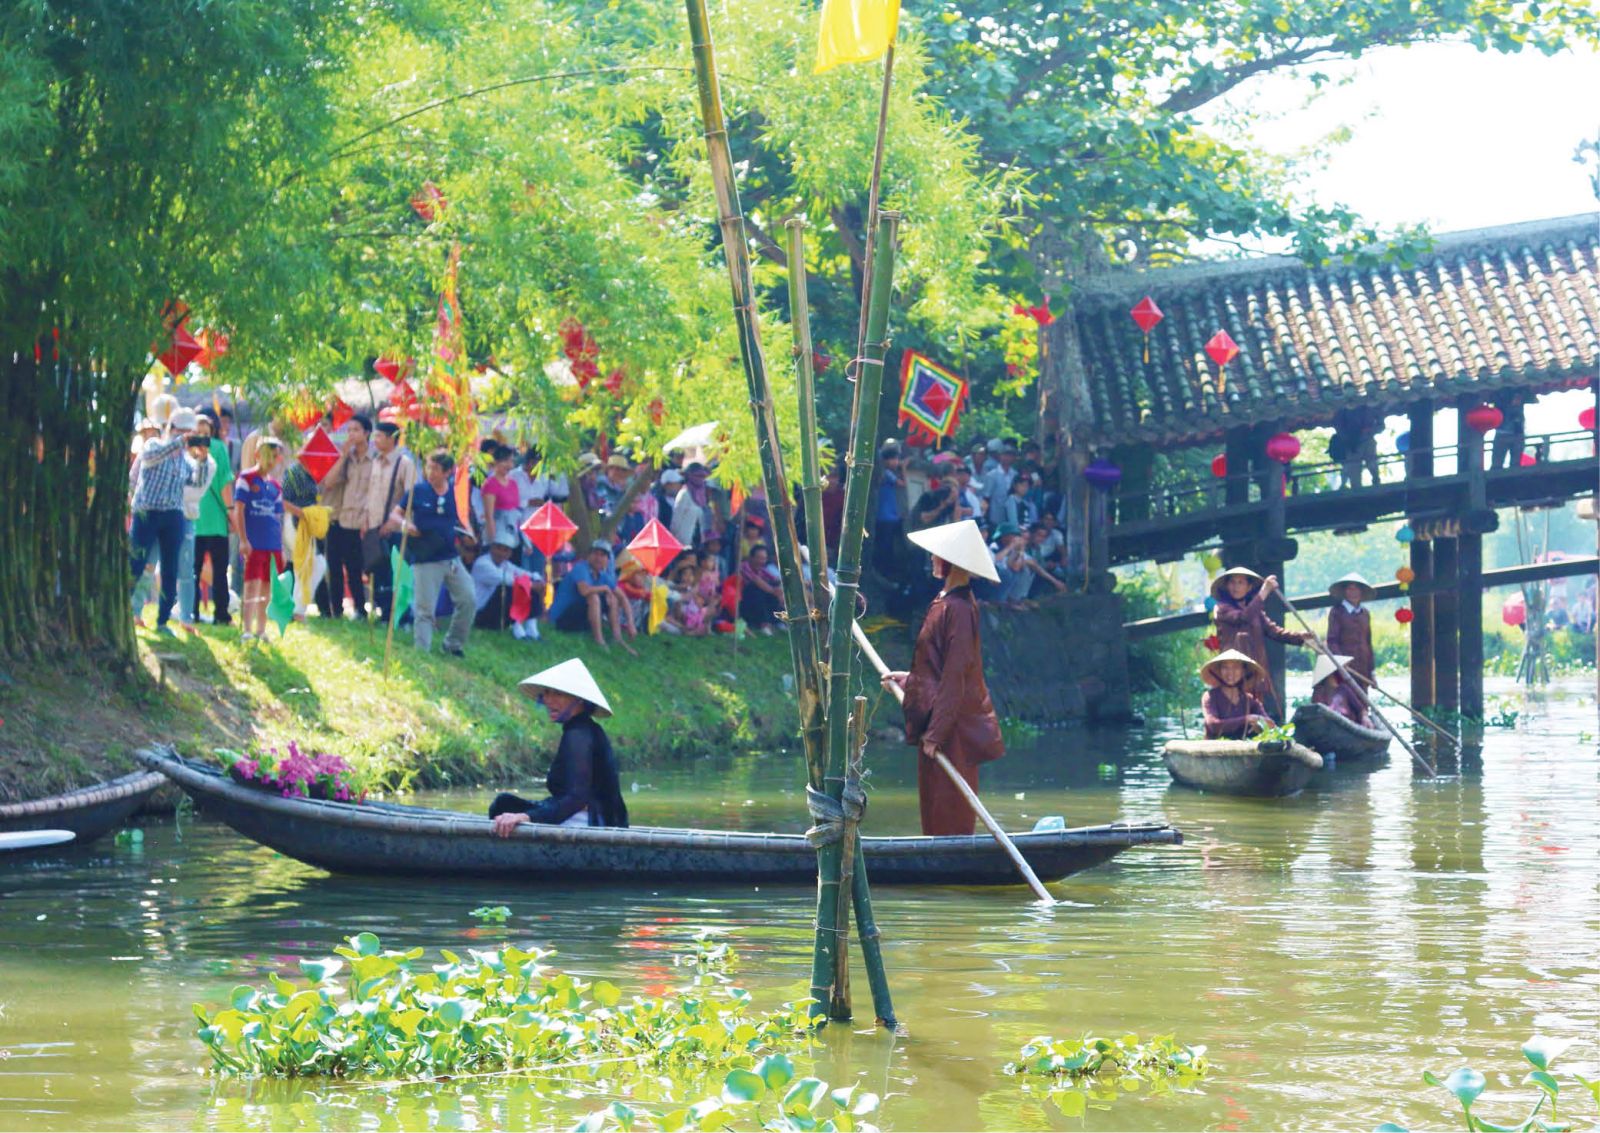 Thừa Thiên Huế: Festival Huế 2022 - Cơ hội phát triển du lịch làng quê - Ảnh 1.